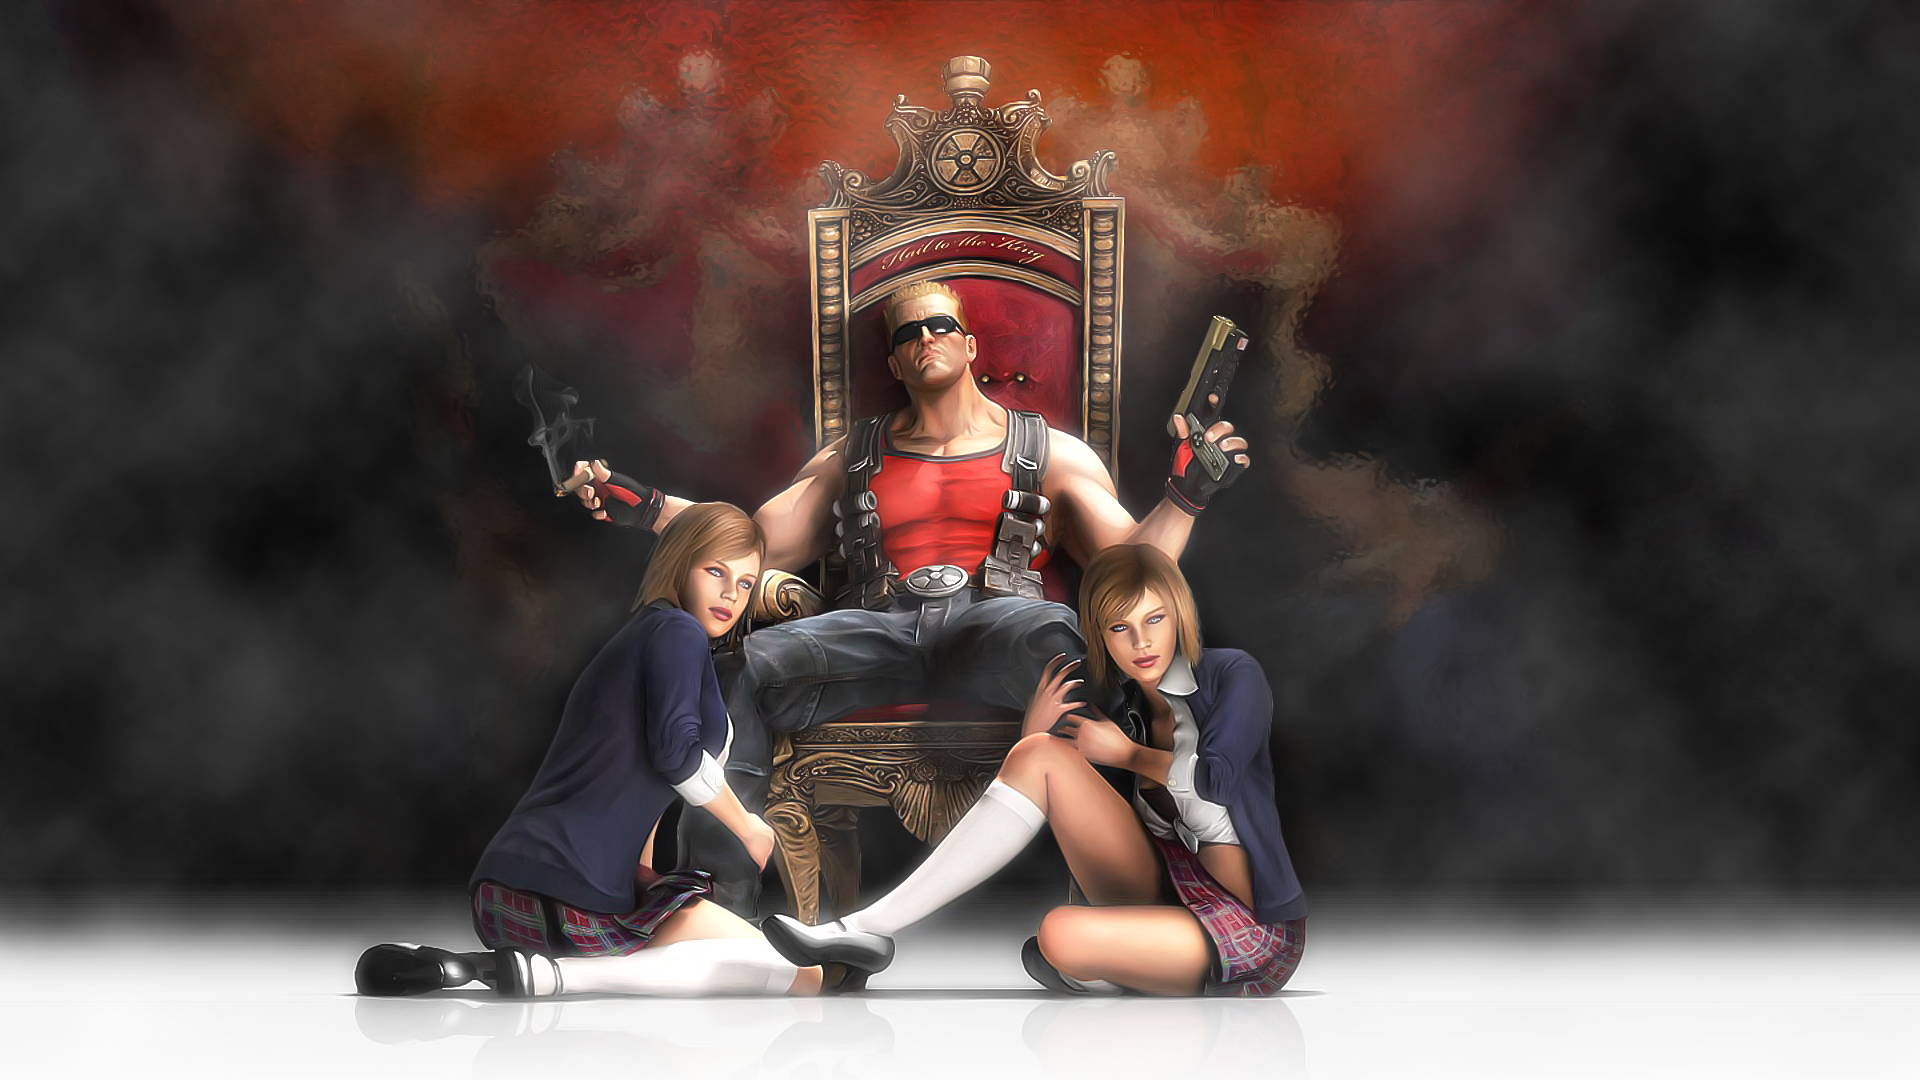 Video Game Duke Nukem Forever HD Wallpaper | Background Image